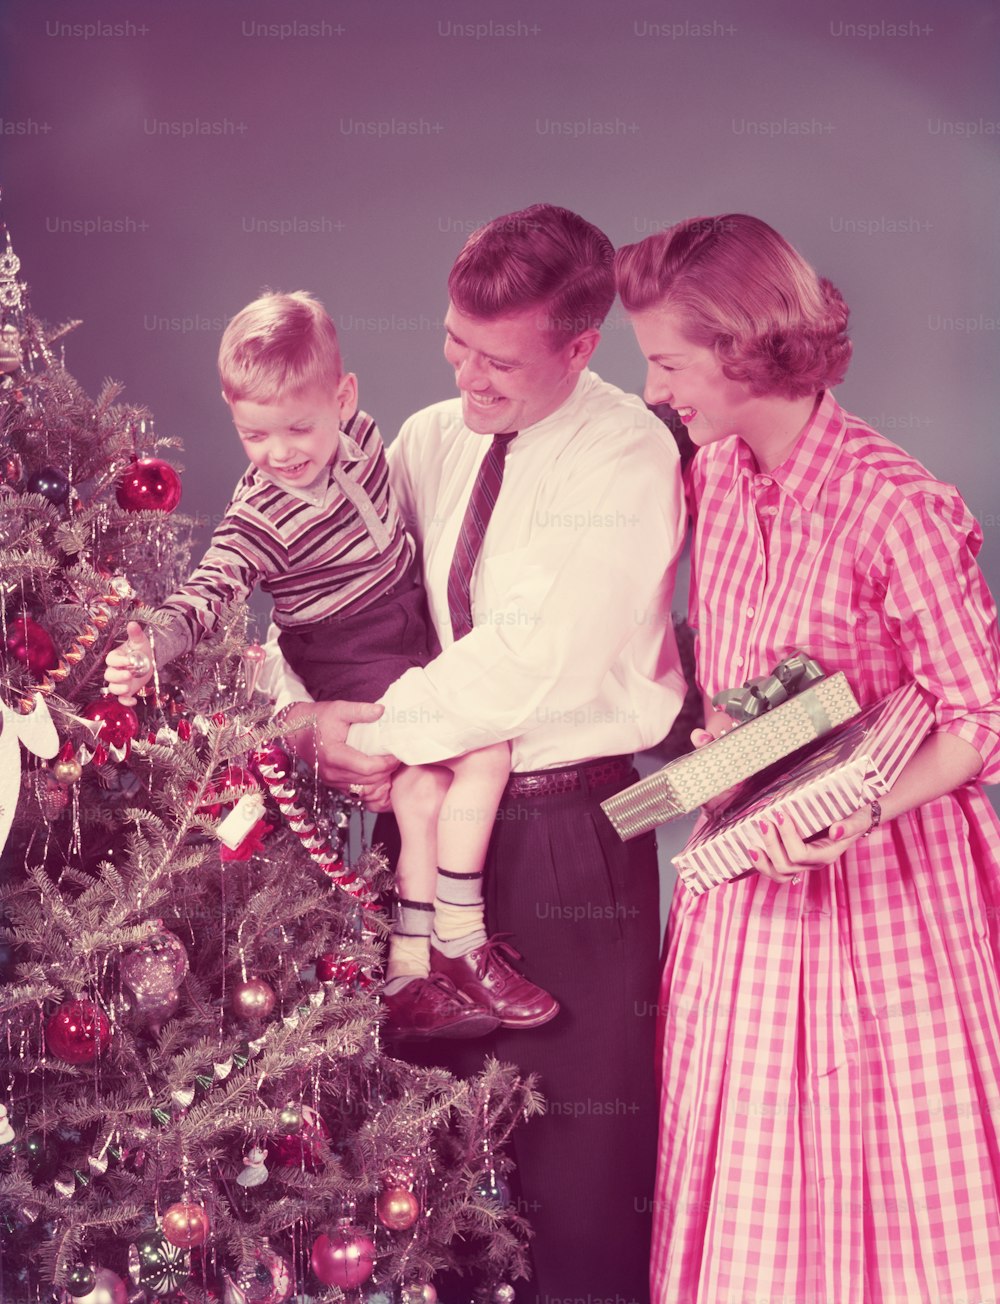 STATI UNITI - 1950 CIRCA: Famiglia a Natale, madre che tiene i regali, padre che porta il figlio.